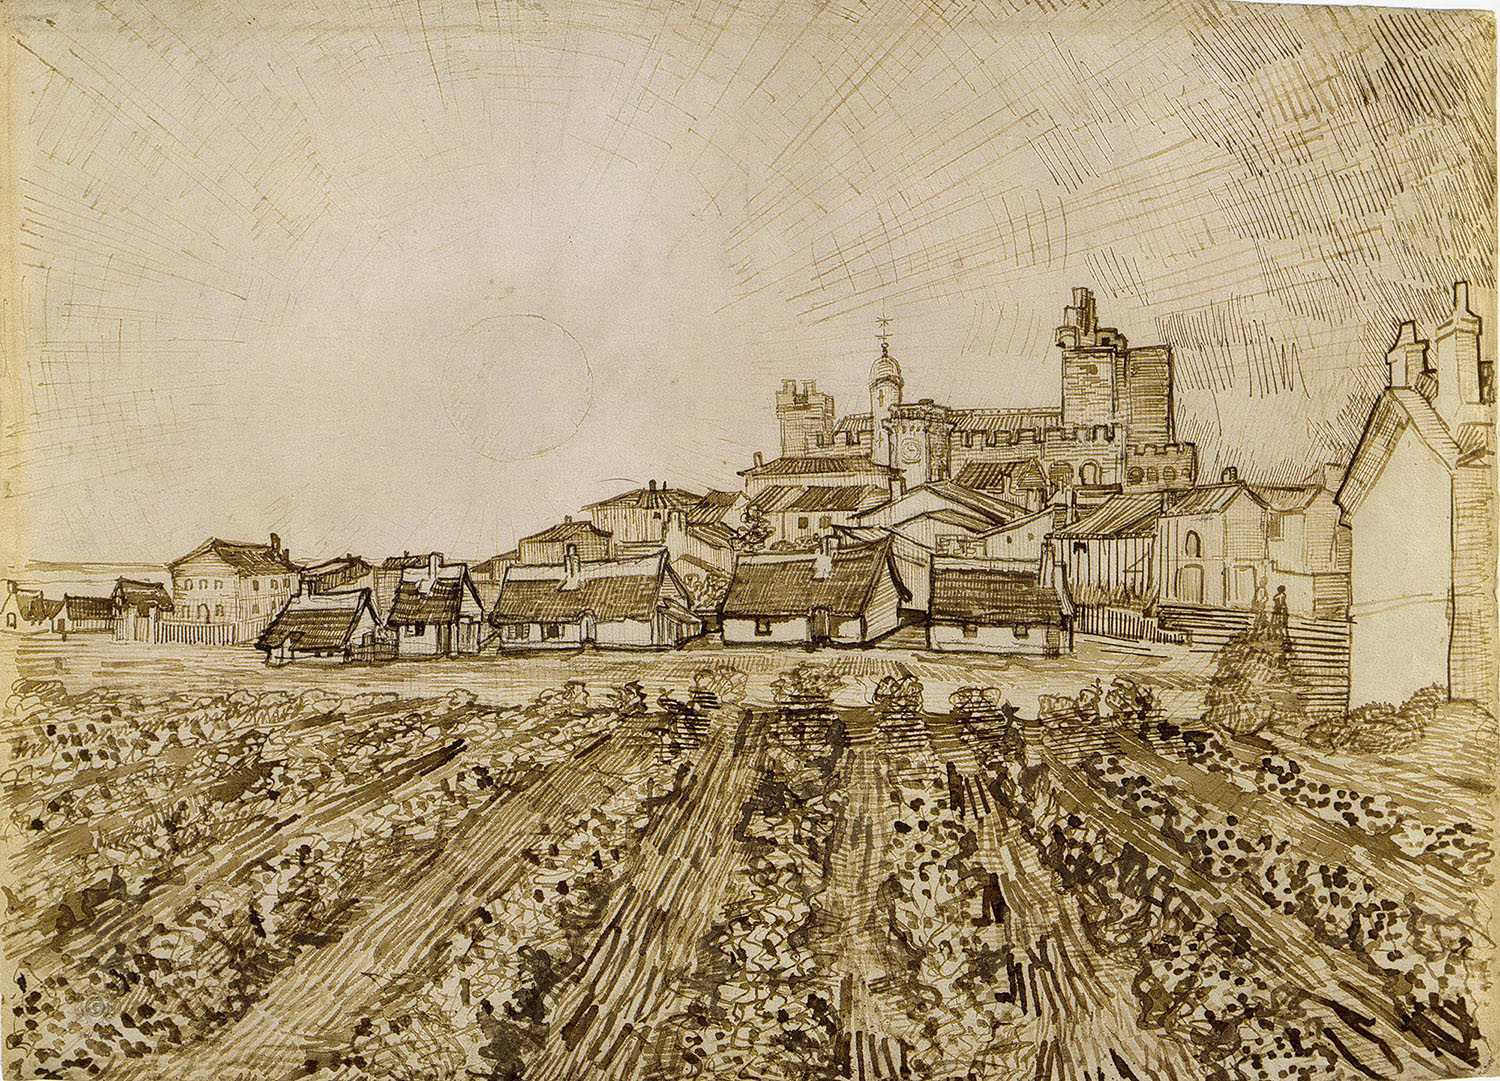 Винсент Ван Гог. "Вид на Сент-Мари с церковью и крепостью". 1888. Собрание Оскара Рейнхарта, Винтертур.